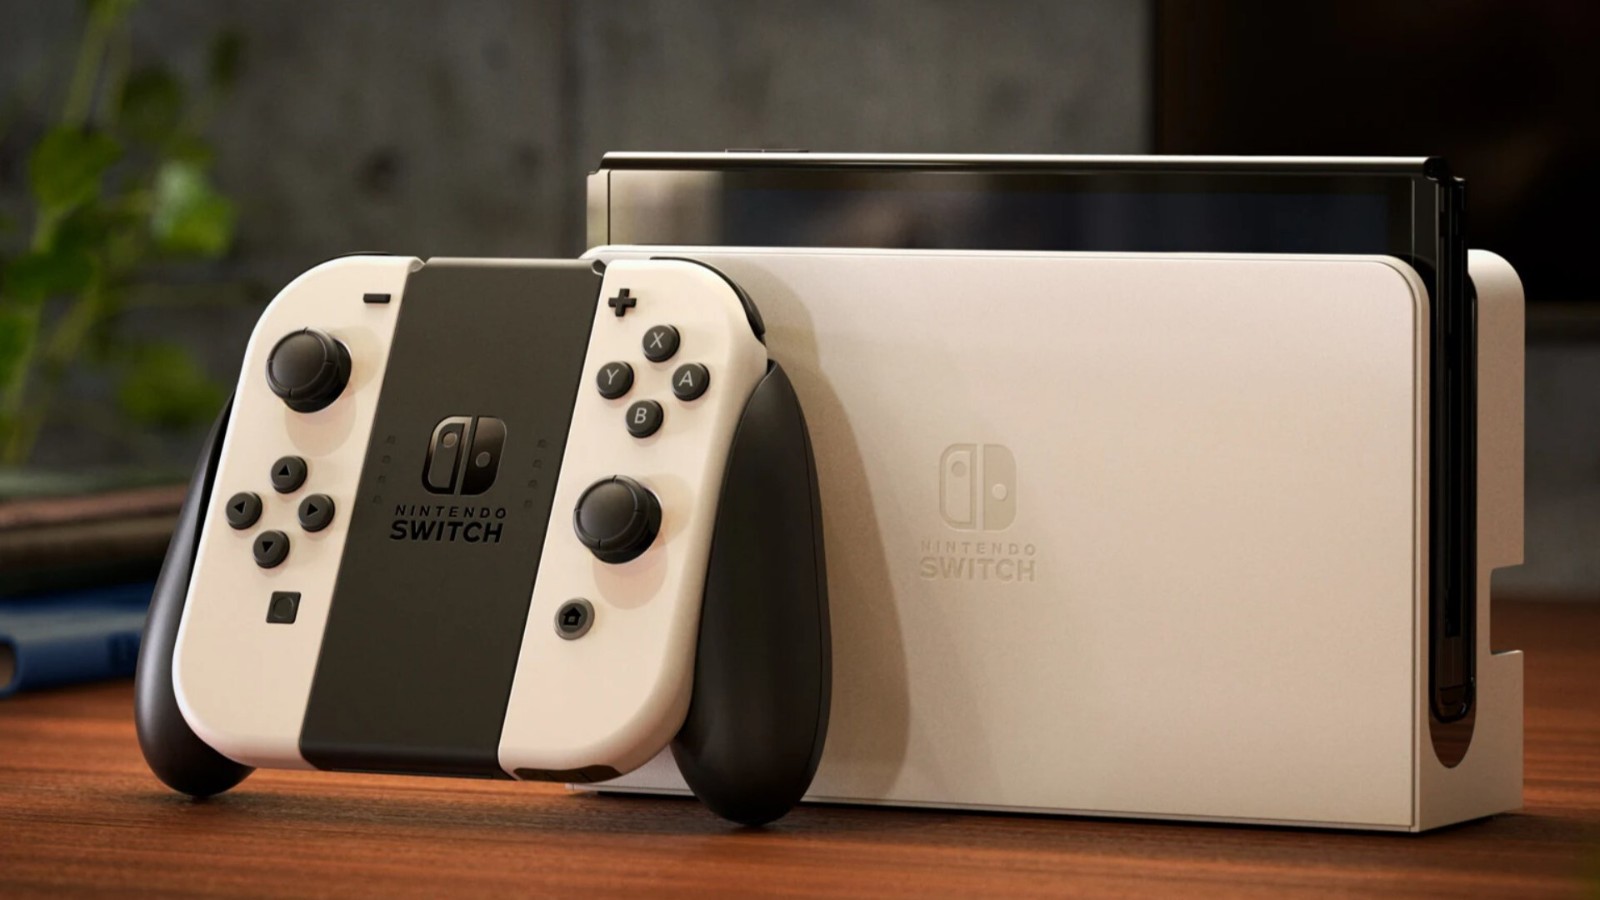 配置了 OLED 螢幕的 Nintendo Switch 新機型